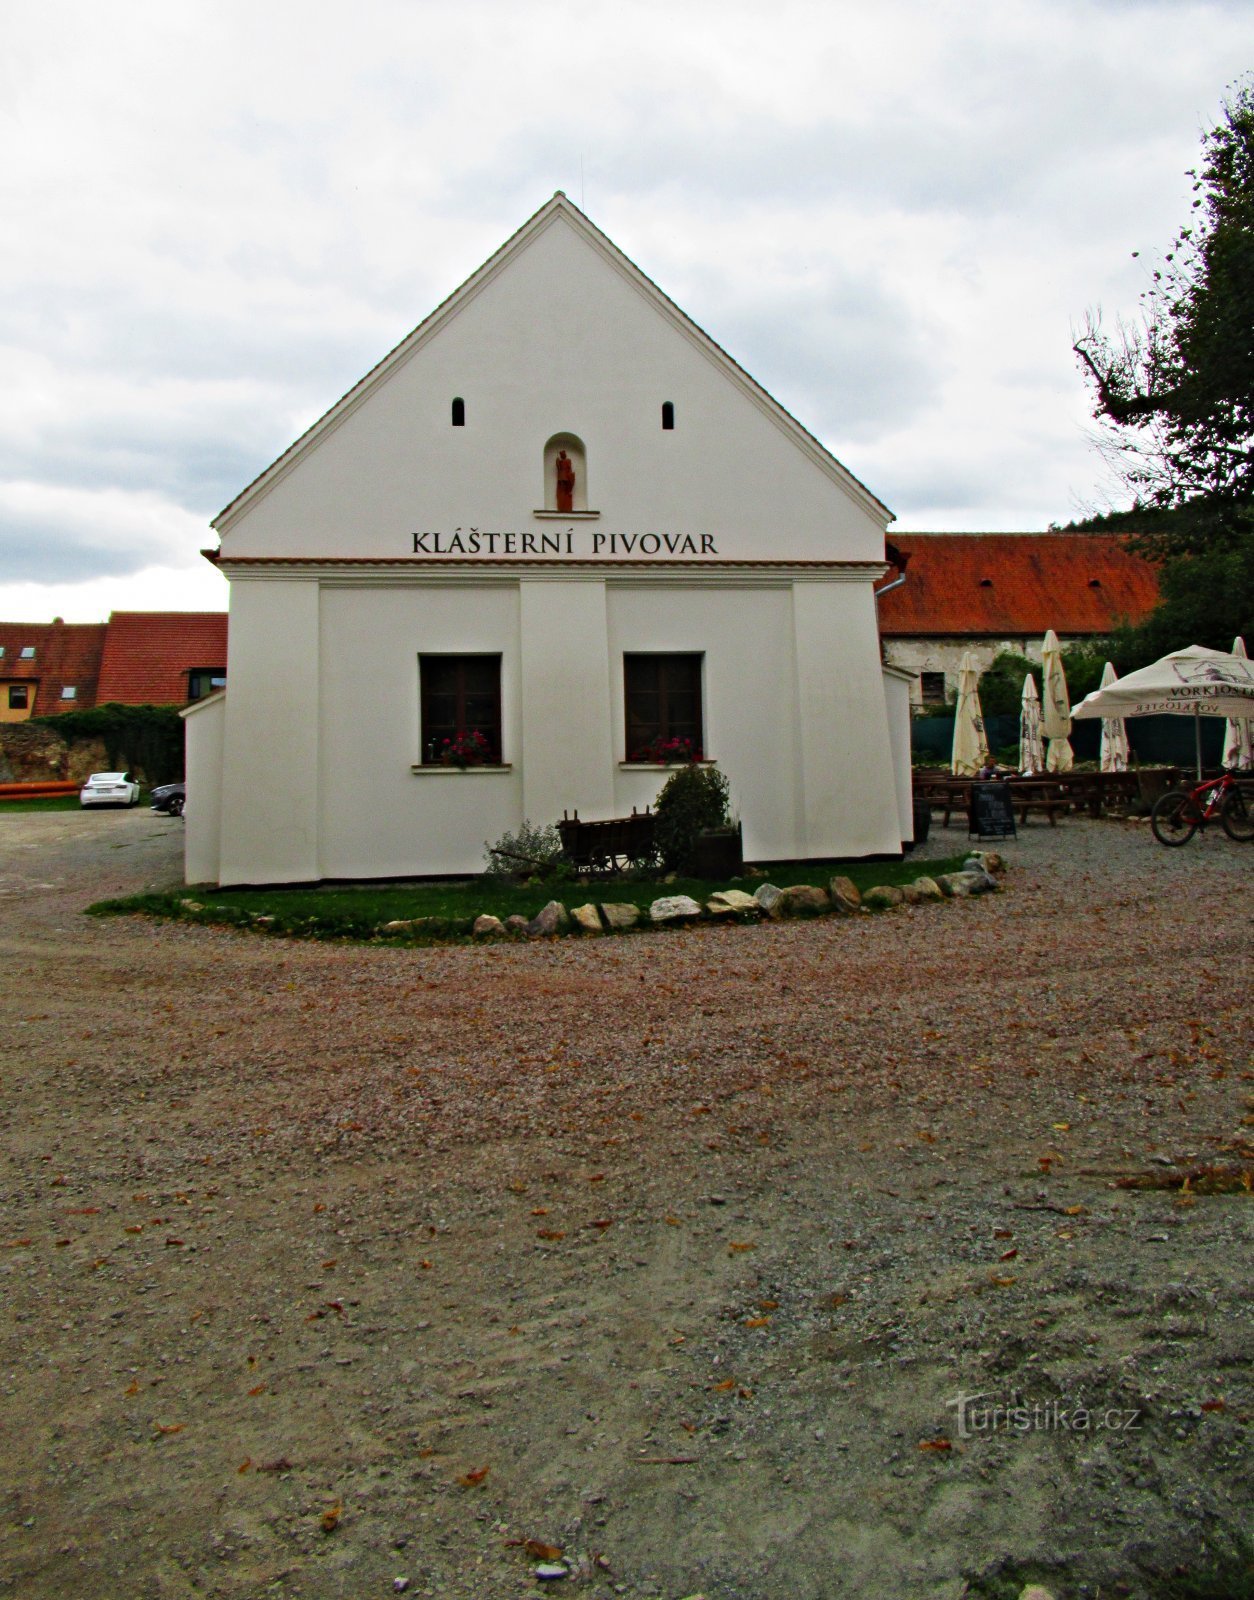 A small family brewery in Předklášteří near Tišnov